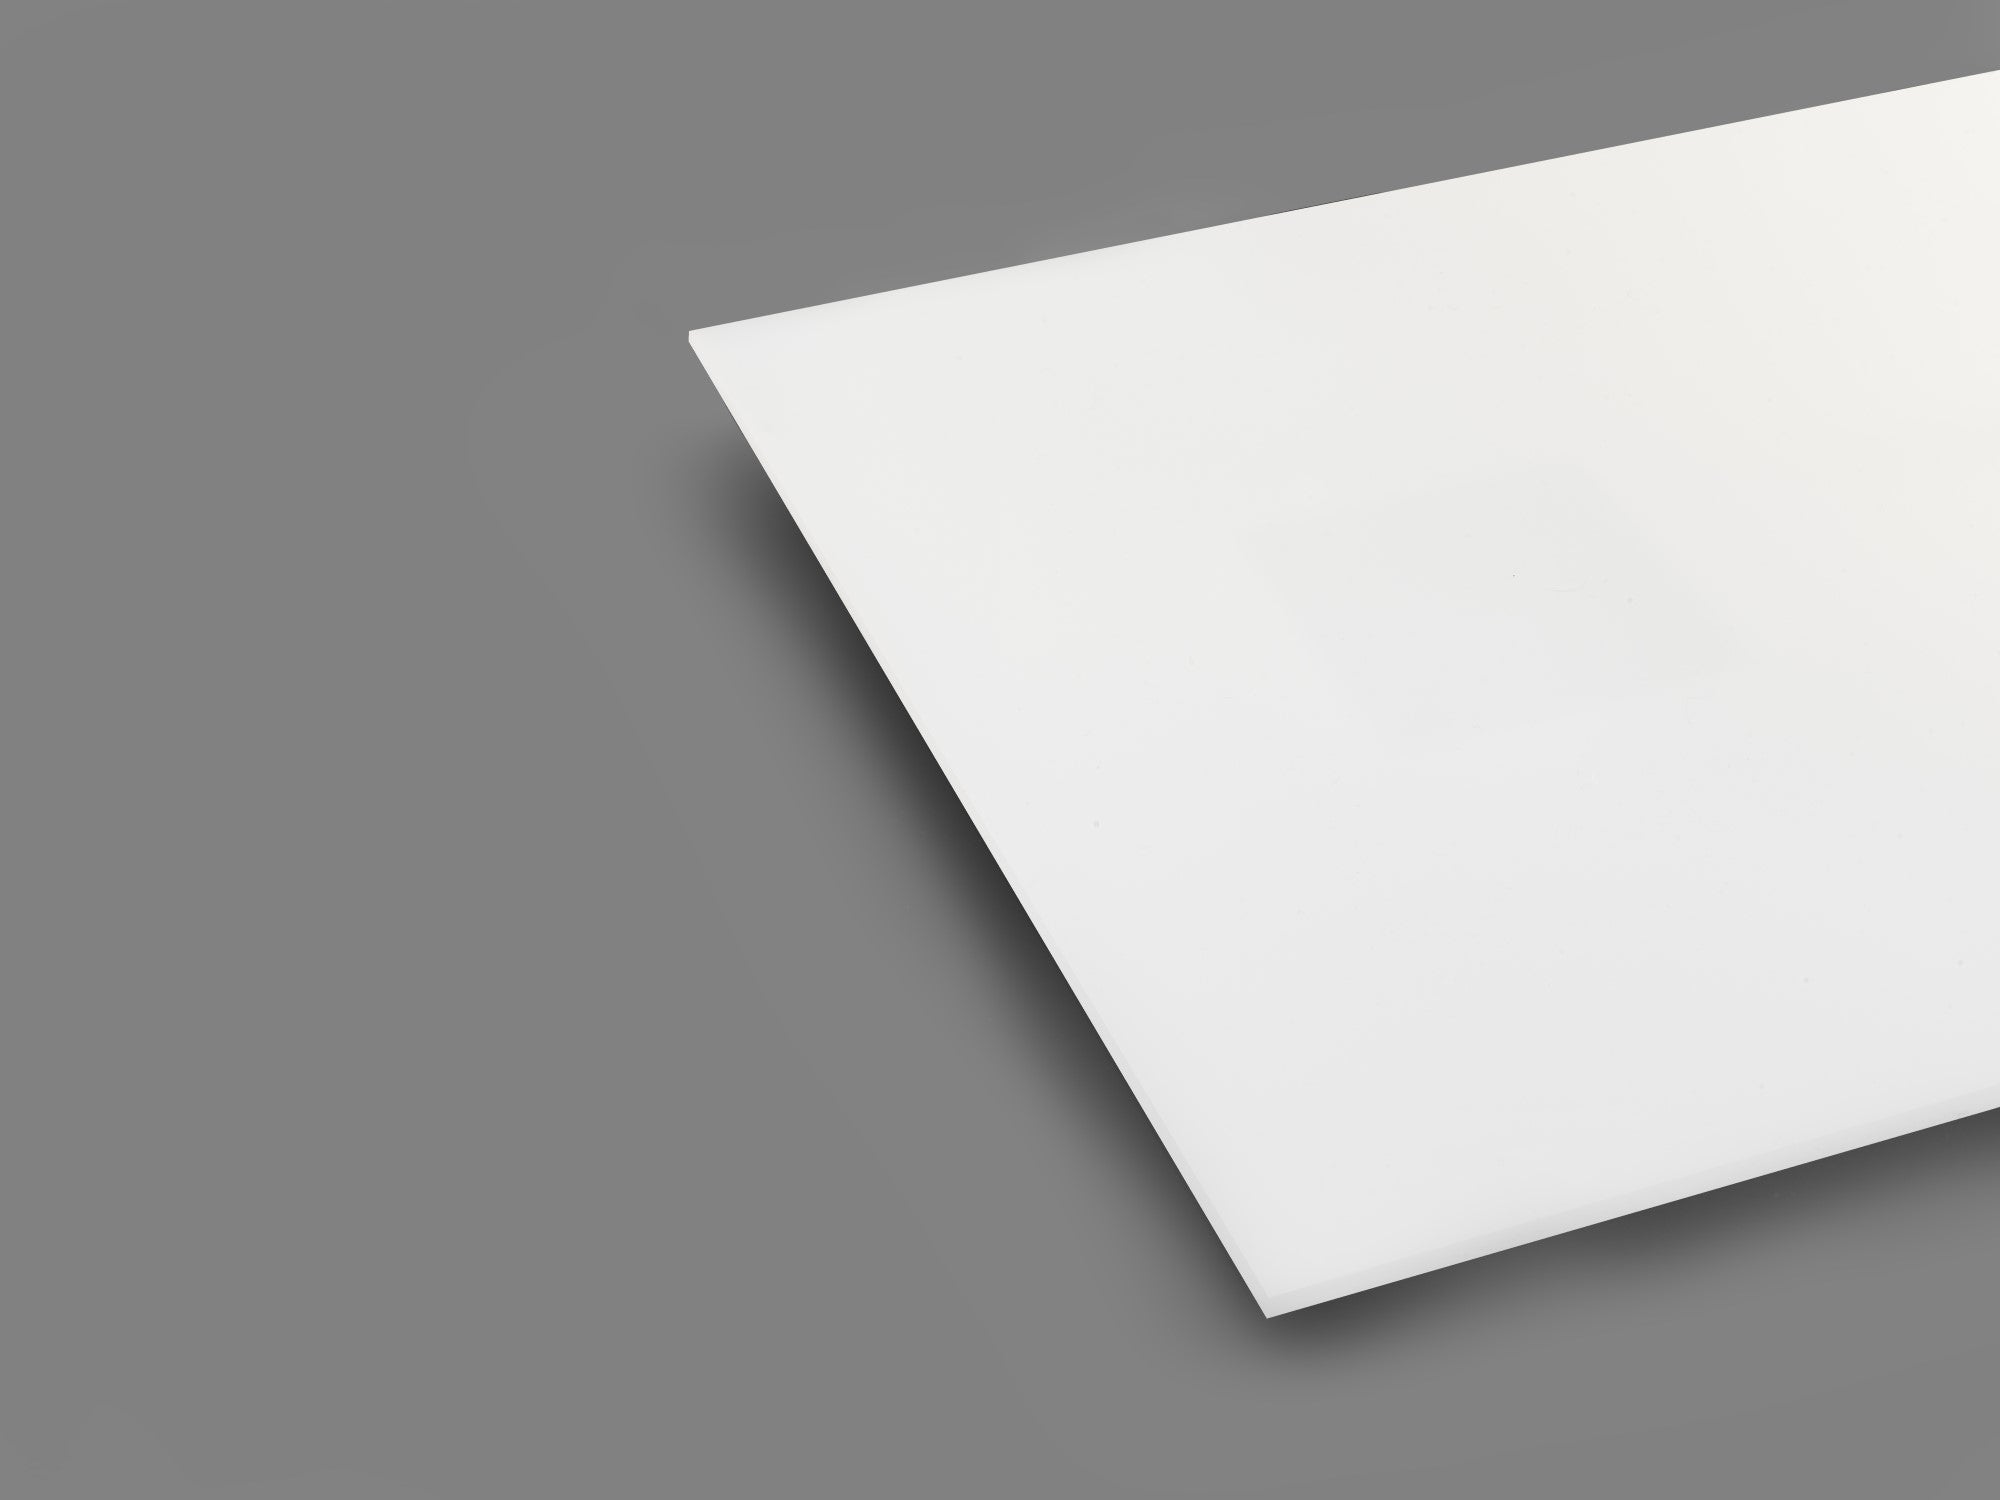 White 2447 Matte/Glossy P95 Translucent Acrylic Sheet